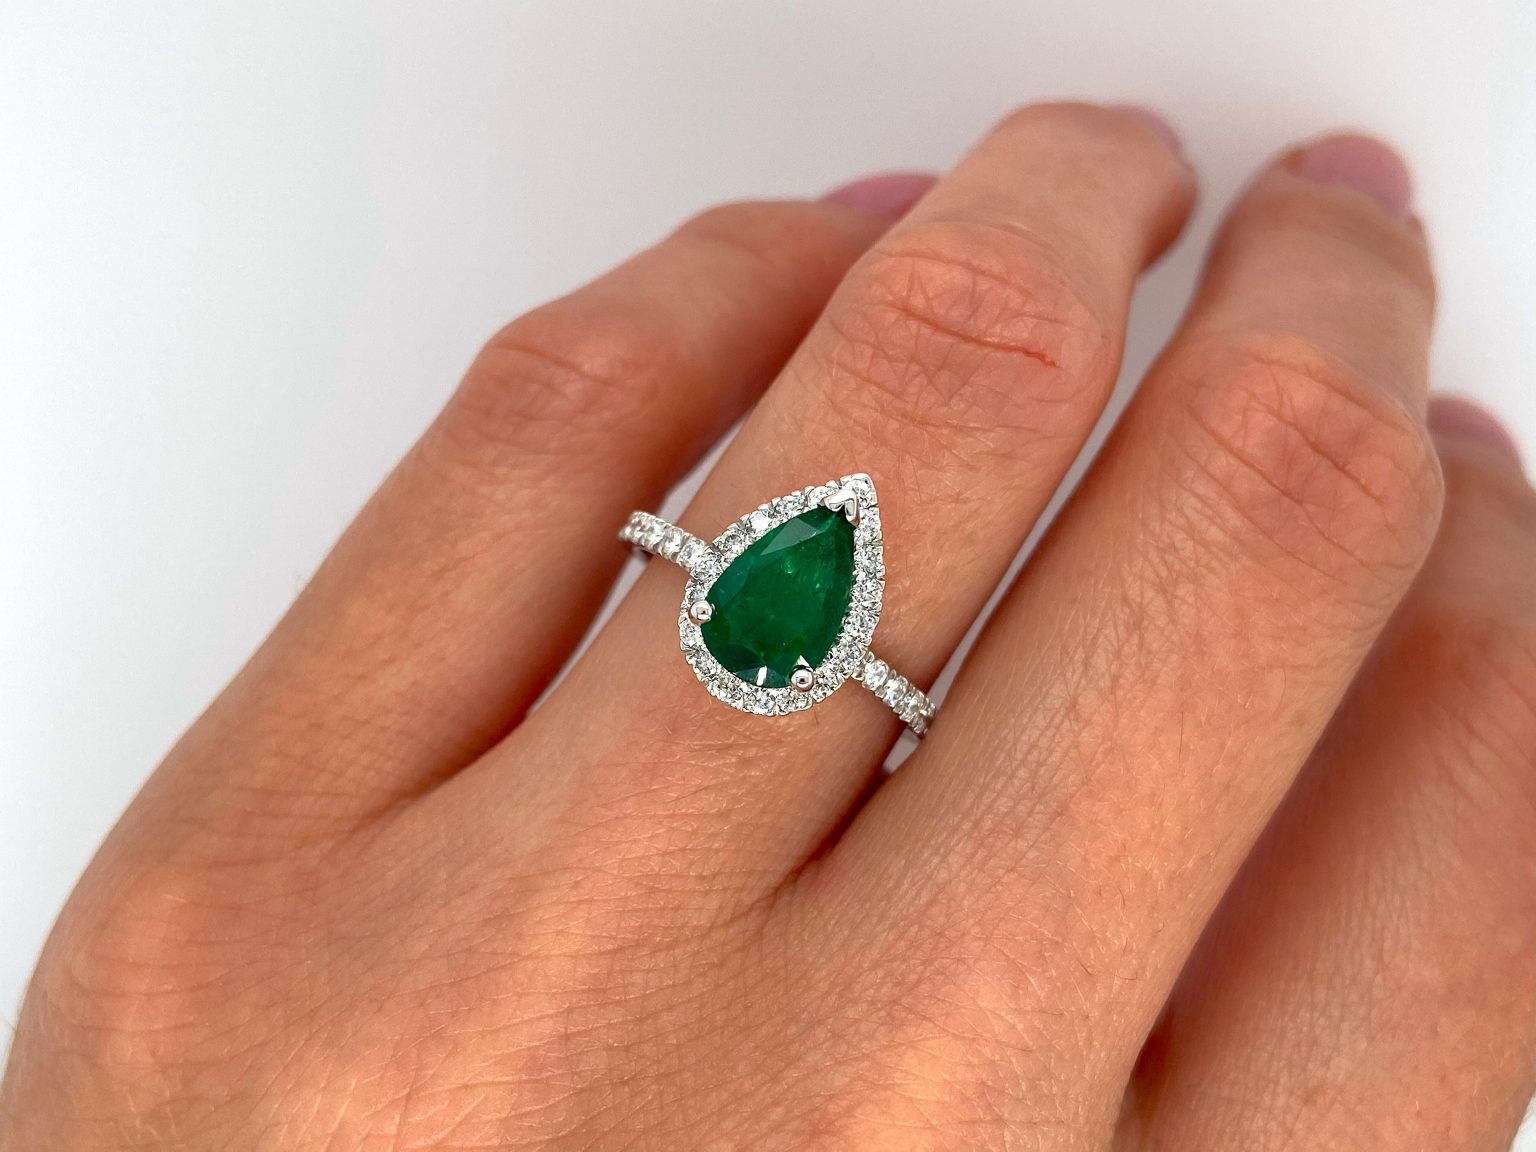 14k White Gold Deep Green Emerald Ring - Gili Mor